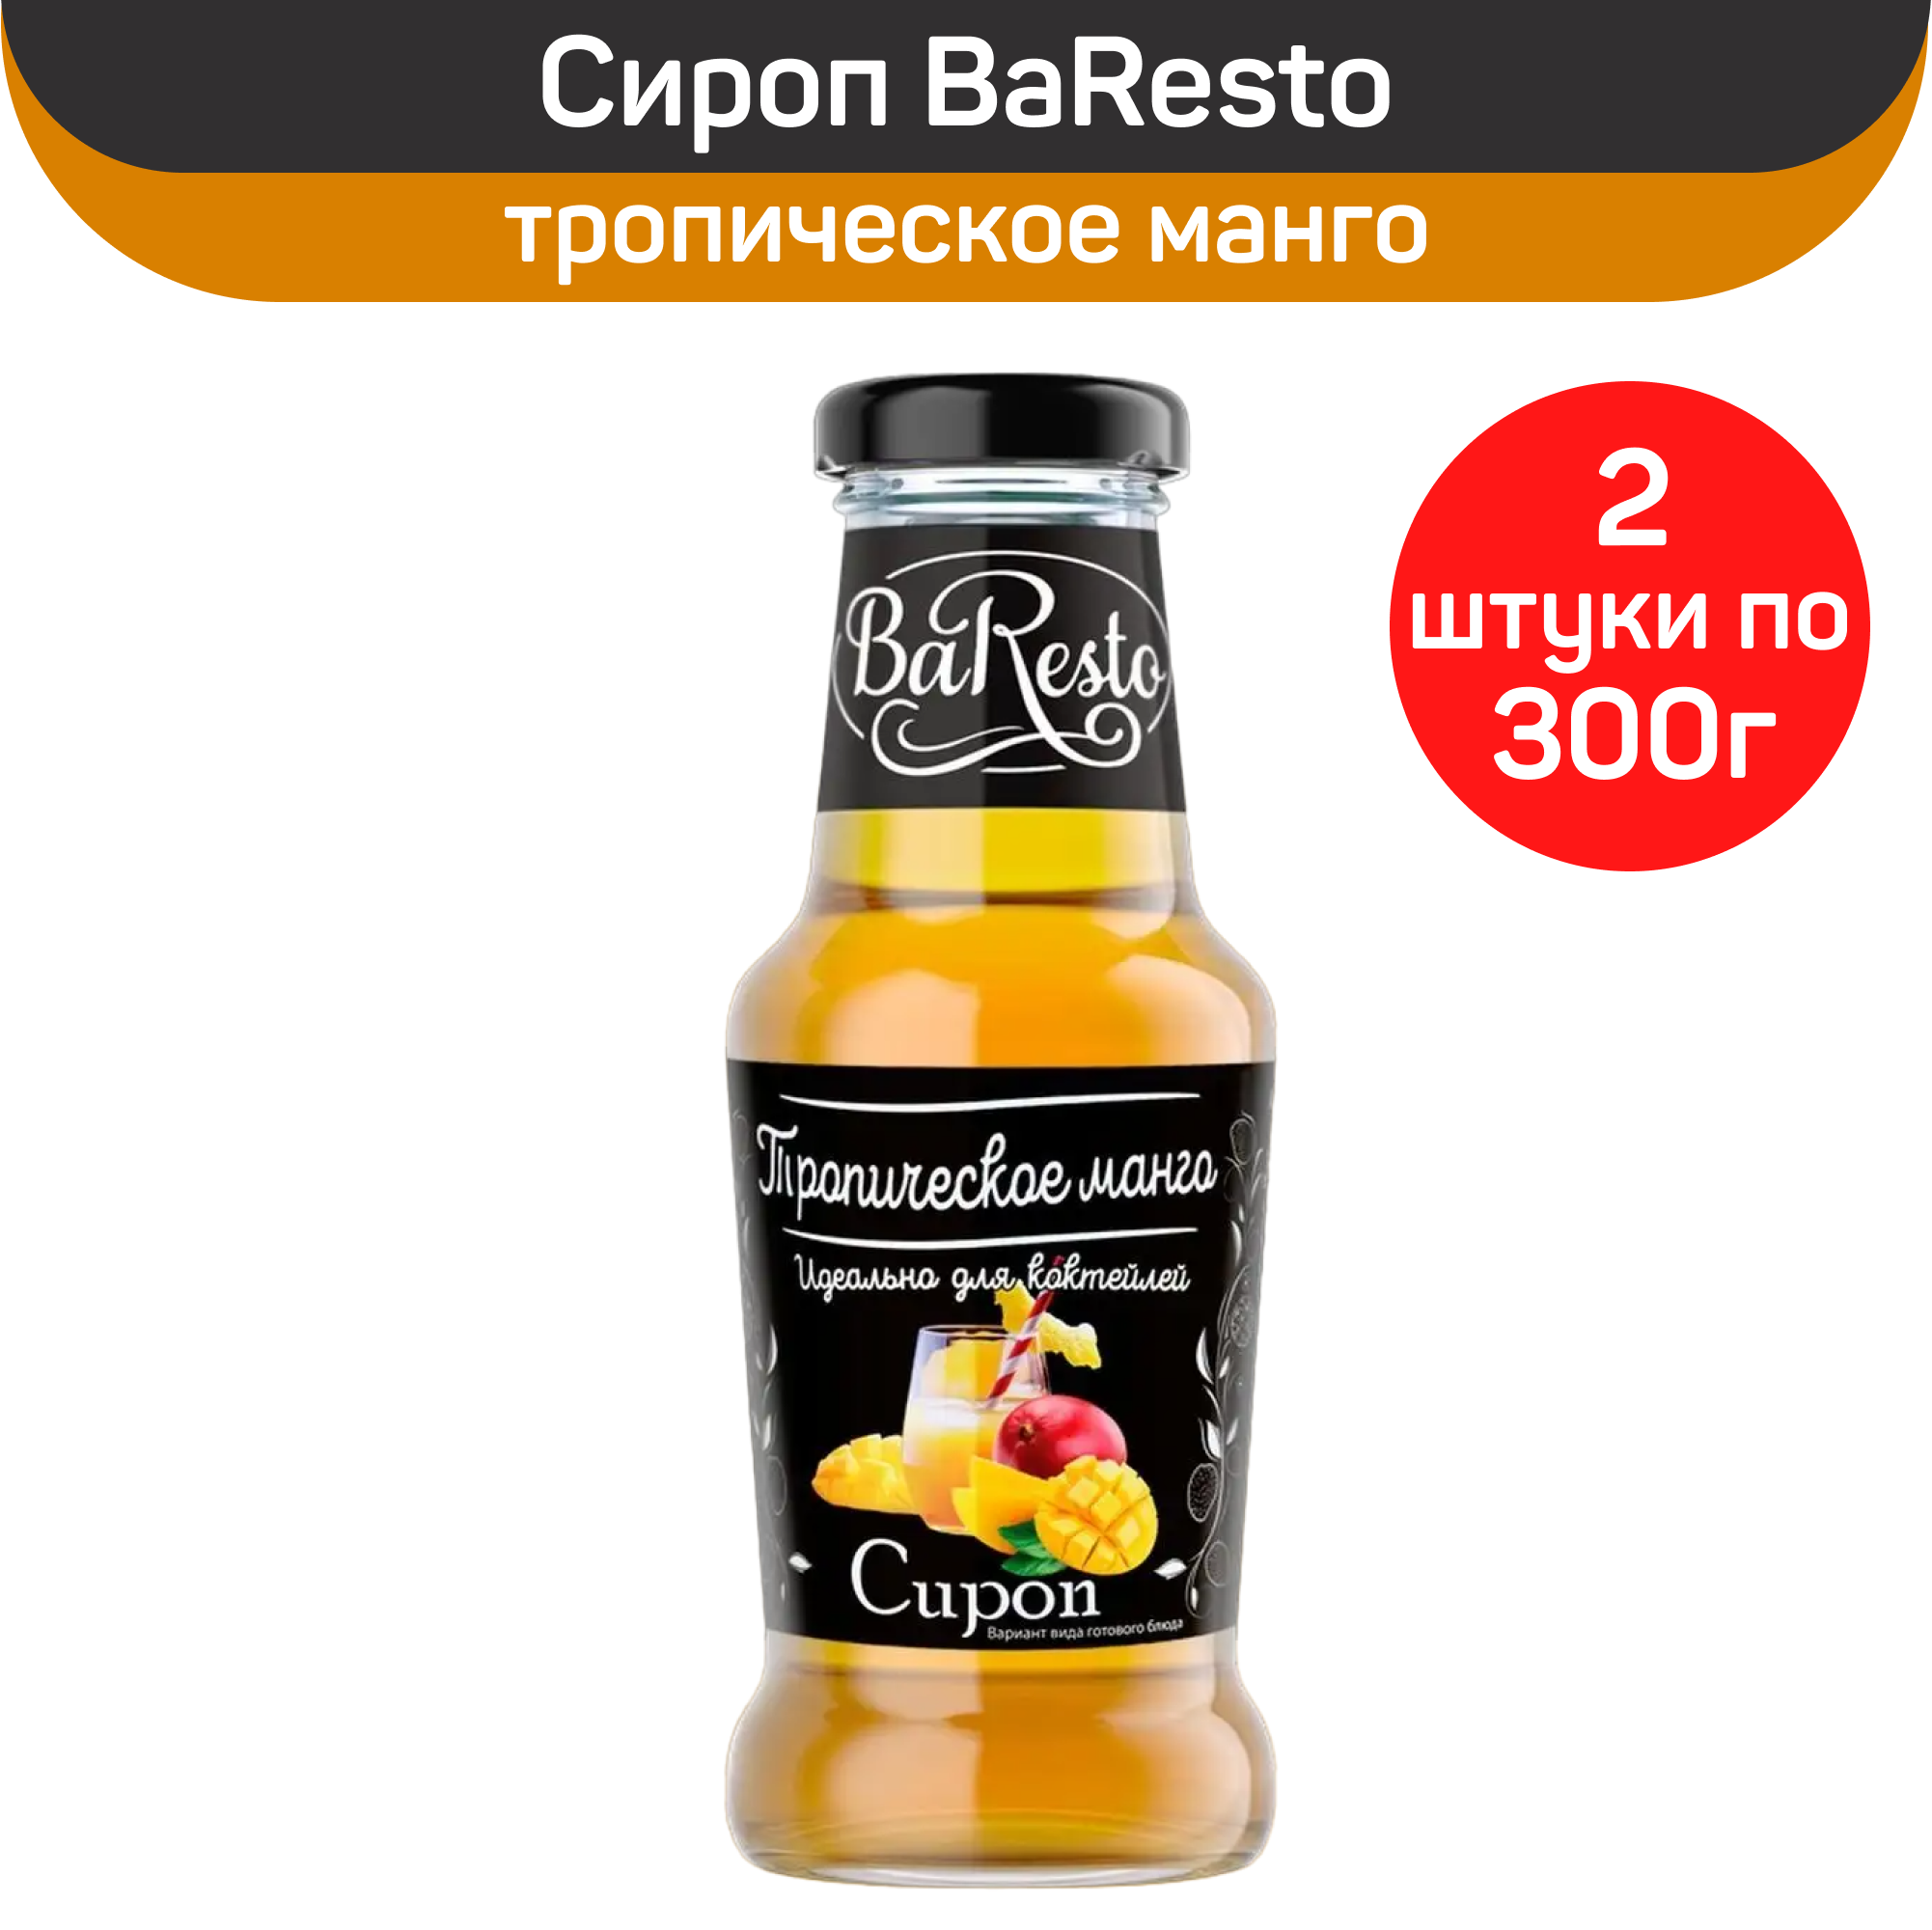 Сироп BaResto Тропическое манго, 2 шт по 300 г